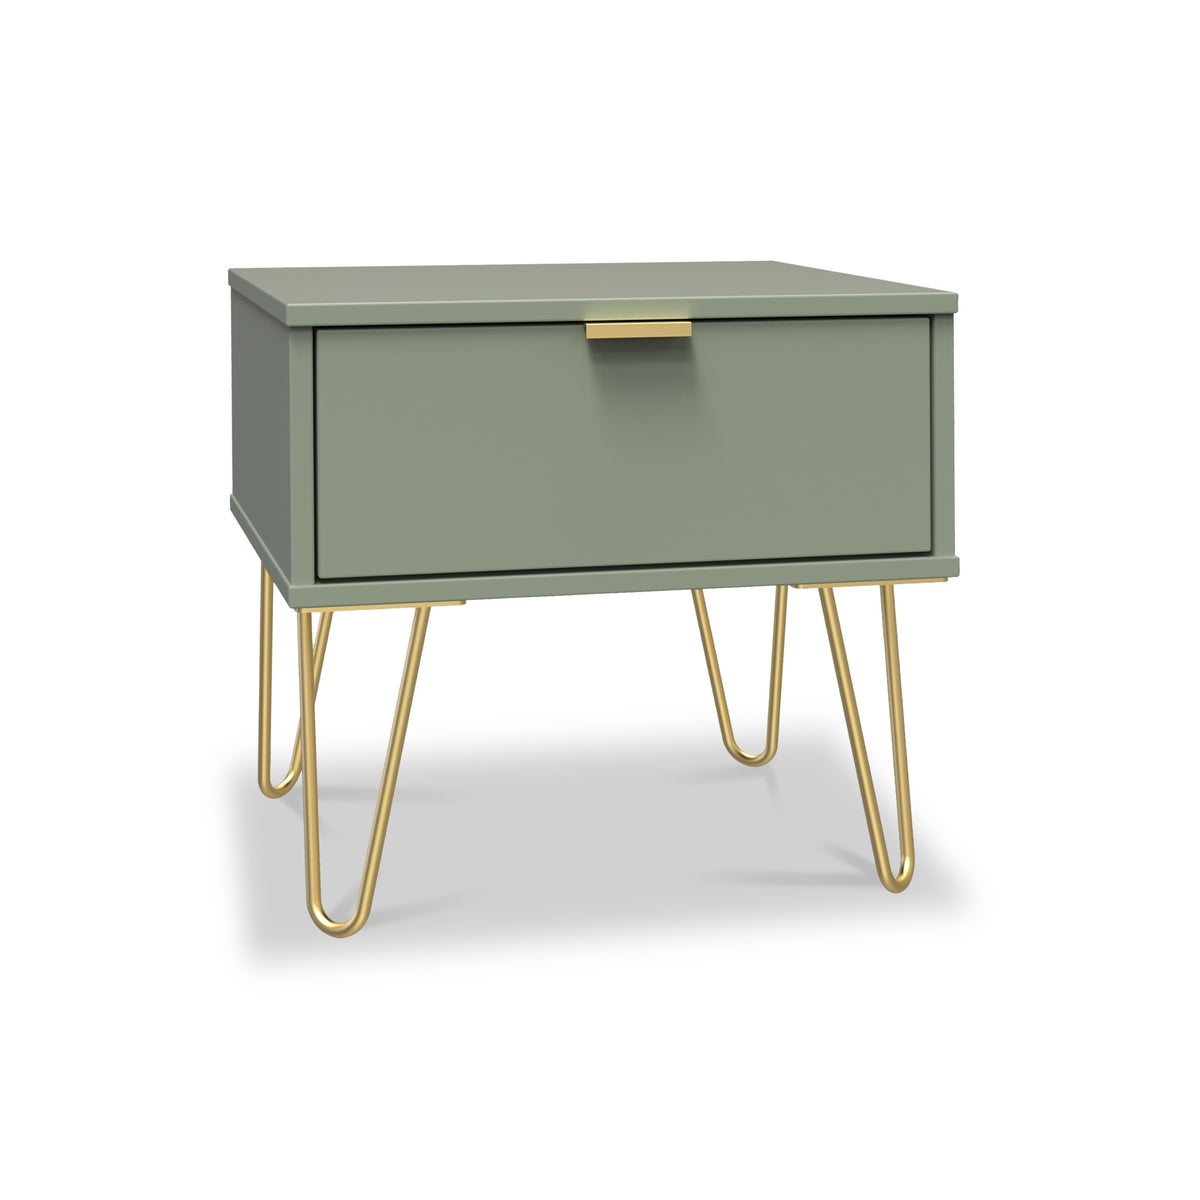 Moreno Olive Green 1 Drawer Bedside Table by Roseland Furniture